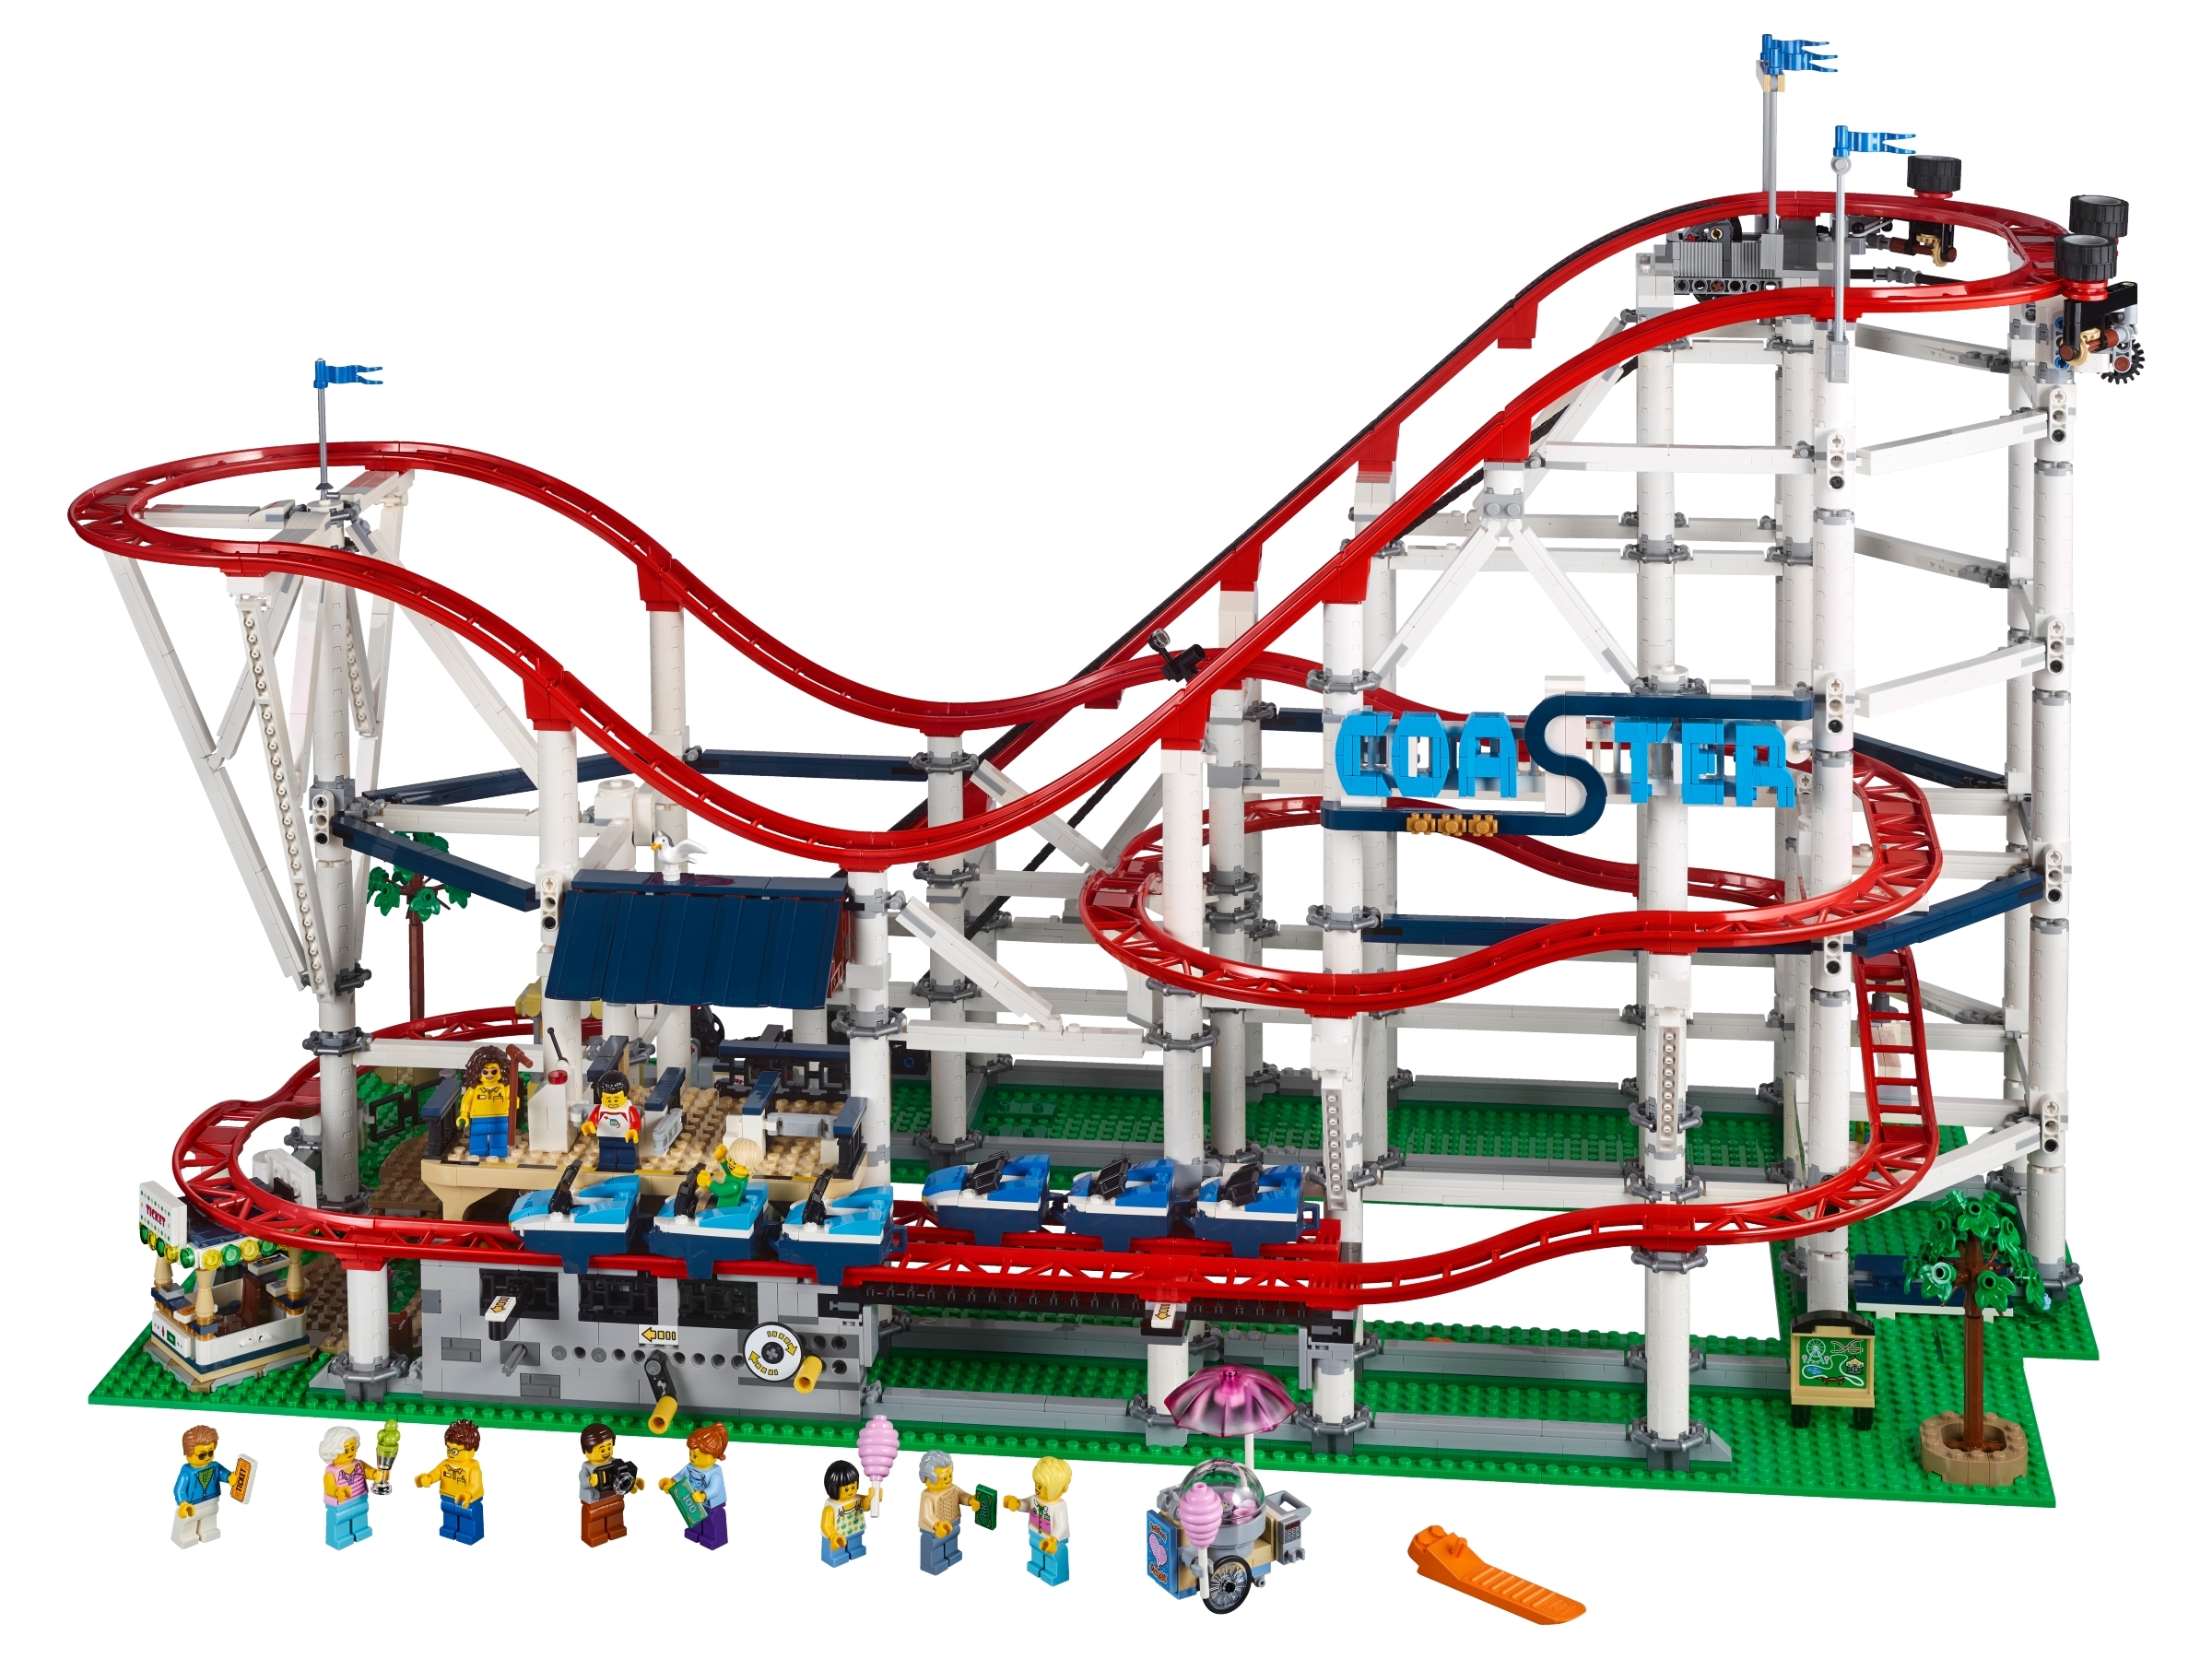 Jeg spiser morgenmad grådig Lægge sammen Roller Coaster 10261 | Creator Expert | Buy online at the Official LEGO®  Shop US